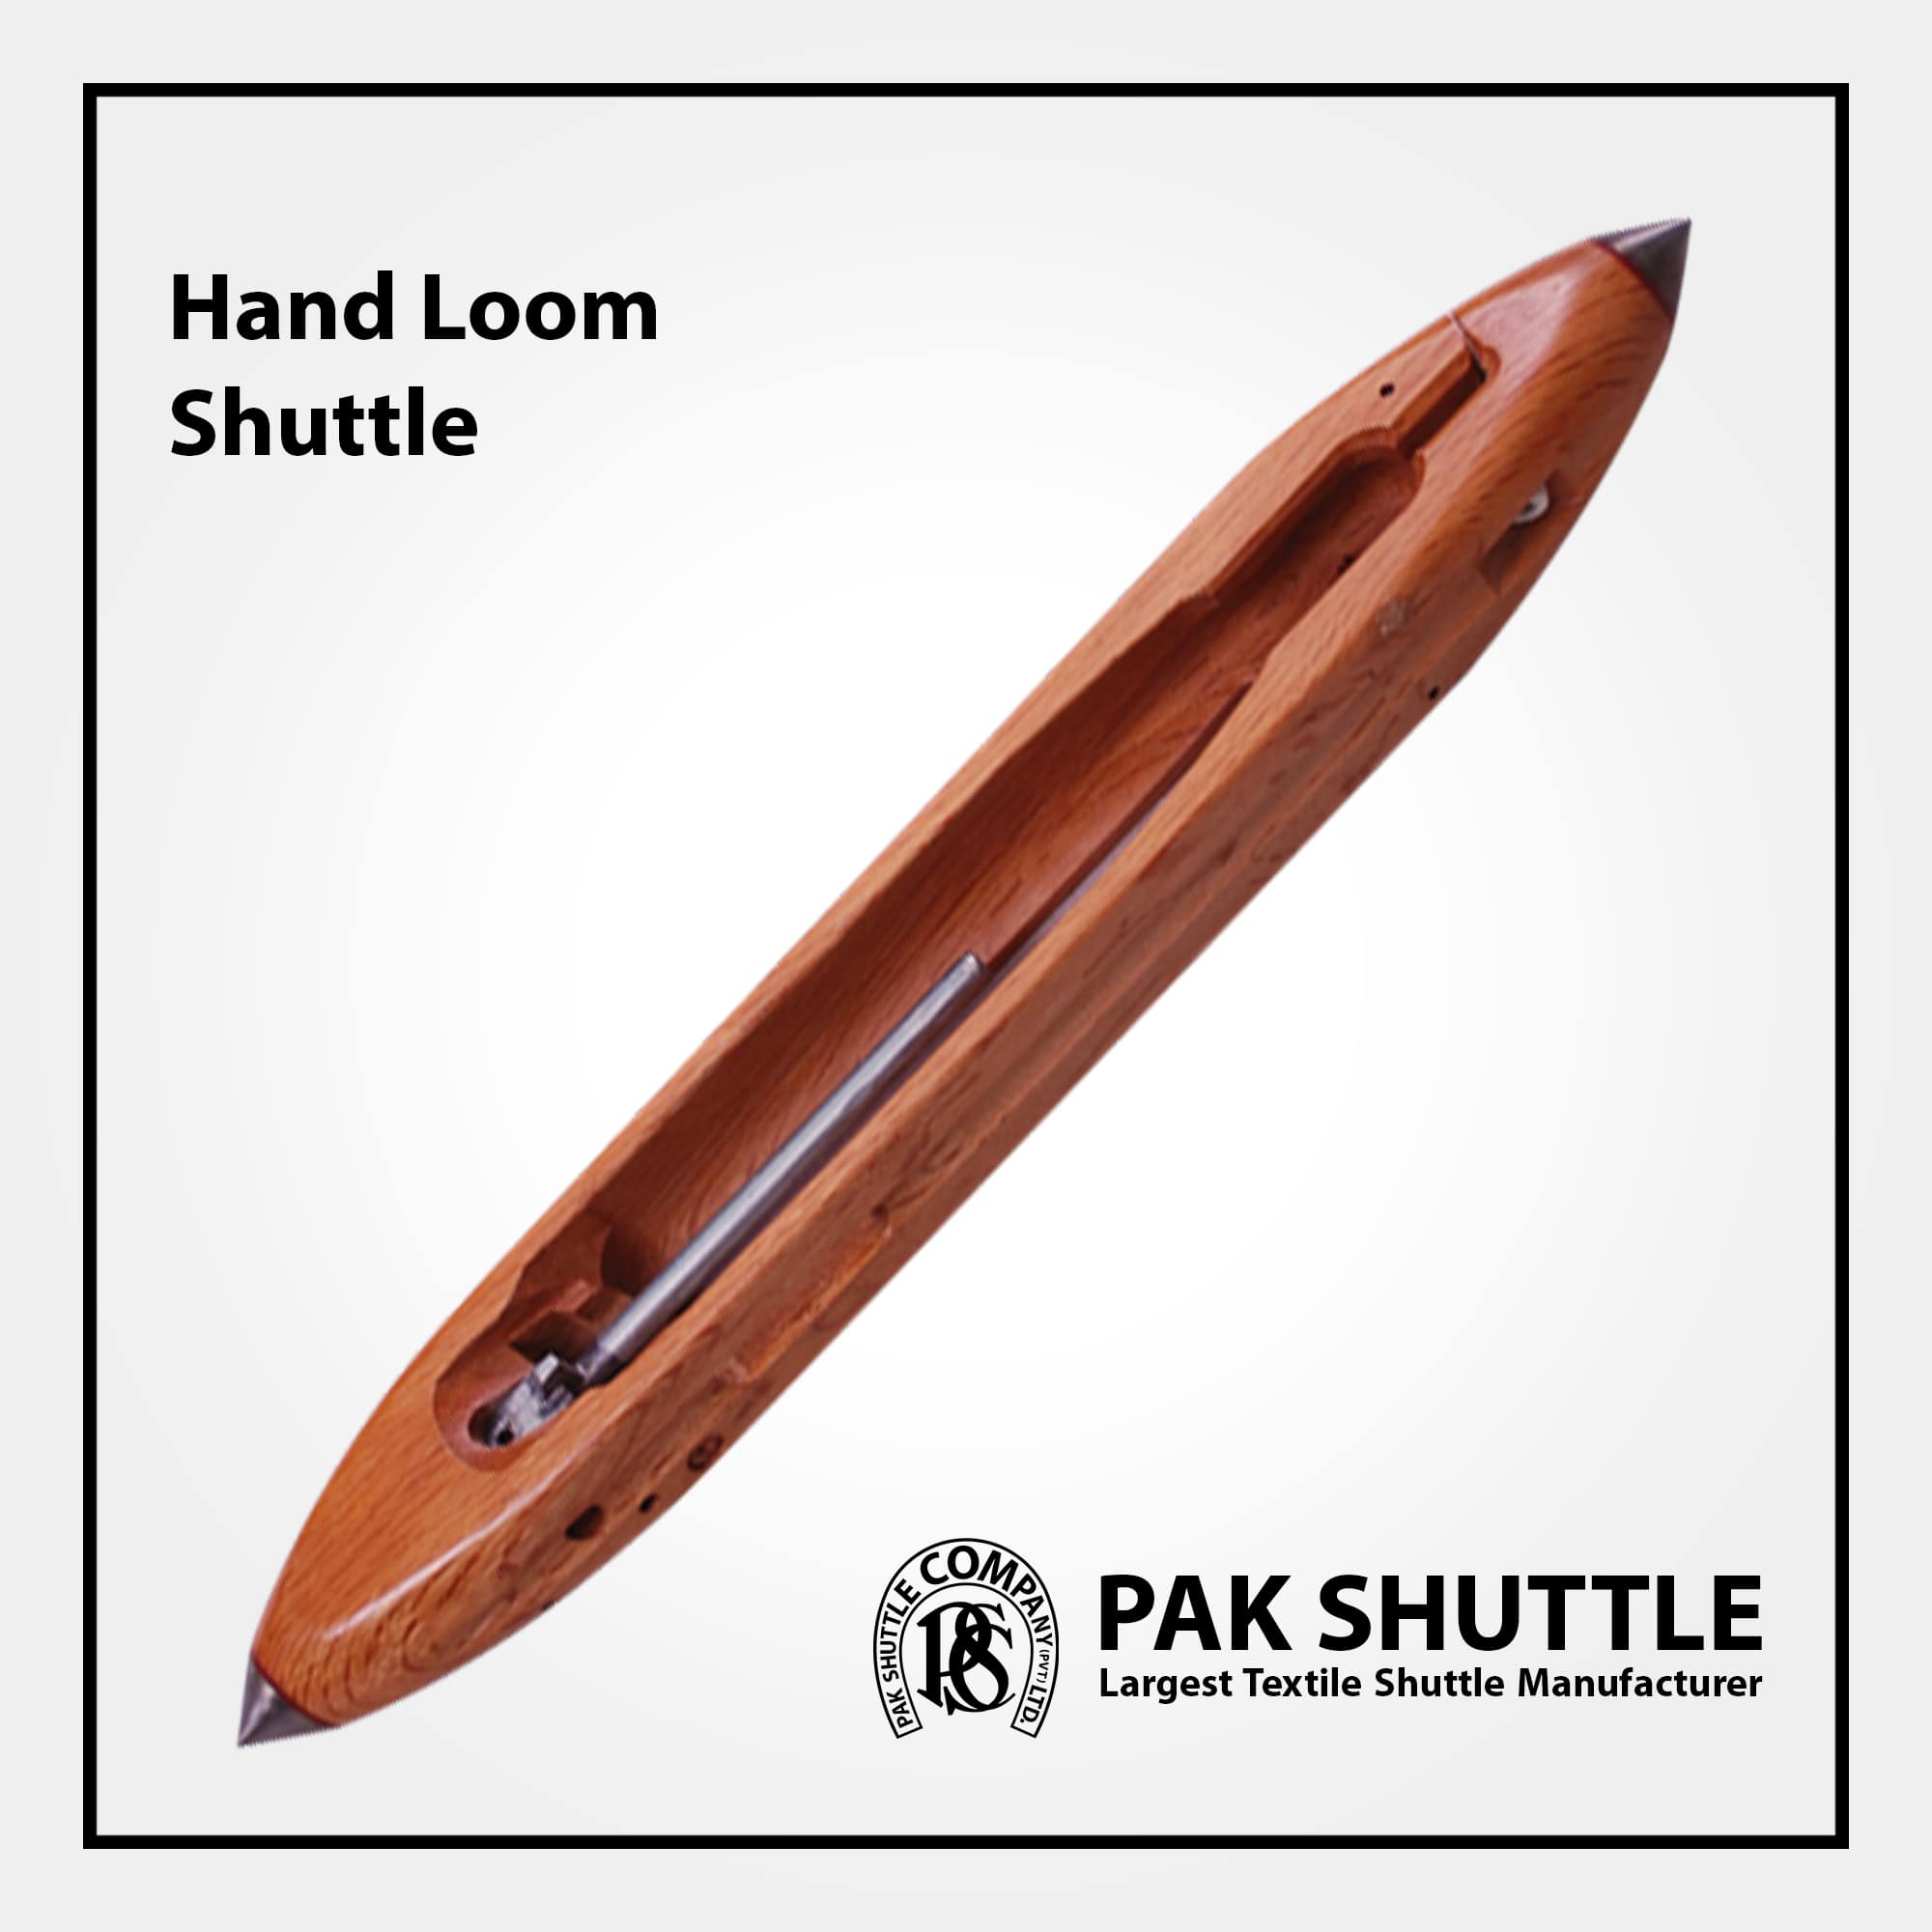 Hand Loom Shuttle by Pak Shuttle Company Pvt Ltd.